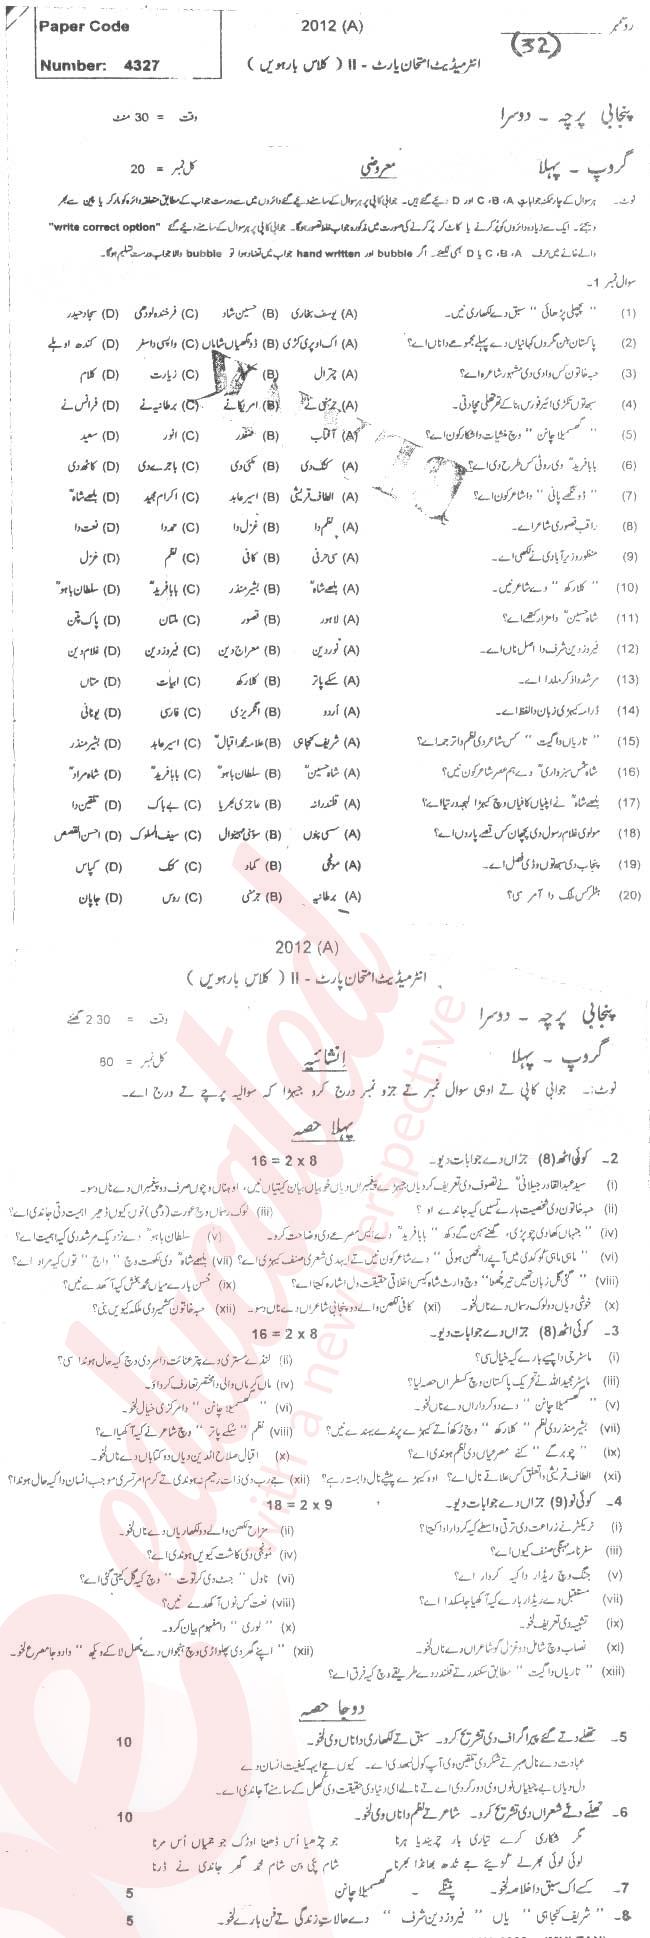 Punjabi FA Part 2 Past Paper Group 1 BISE Multan 2012